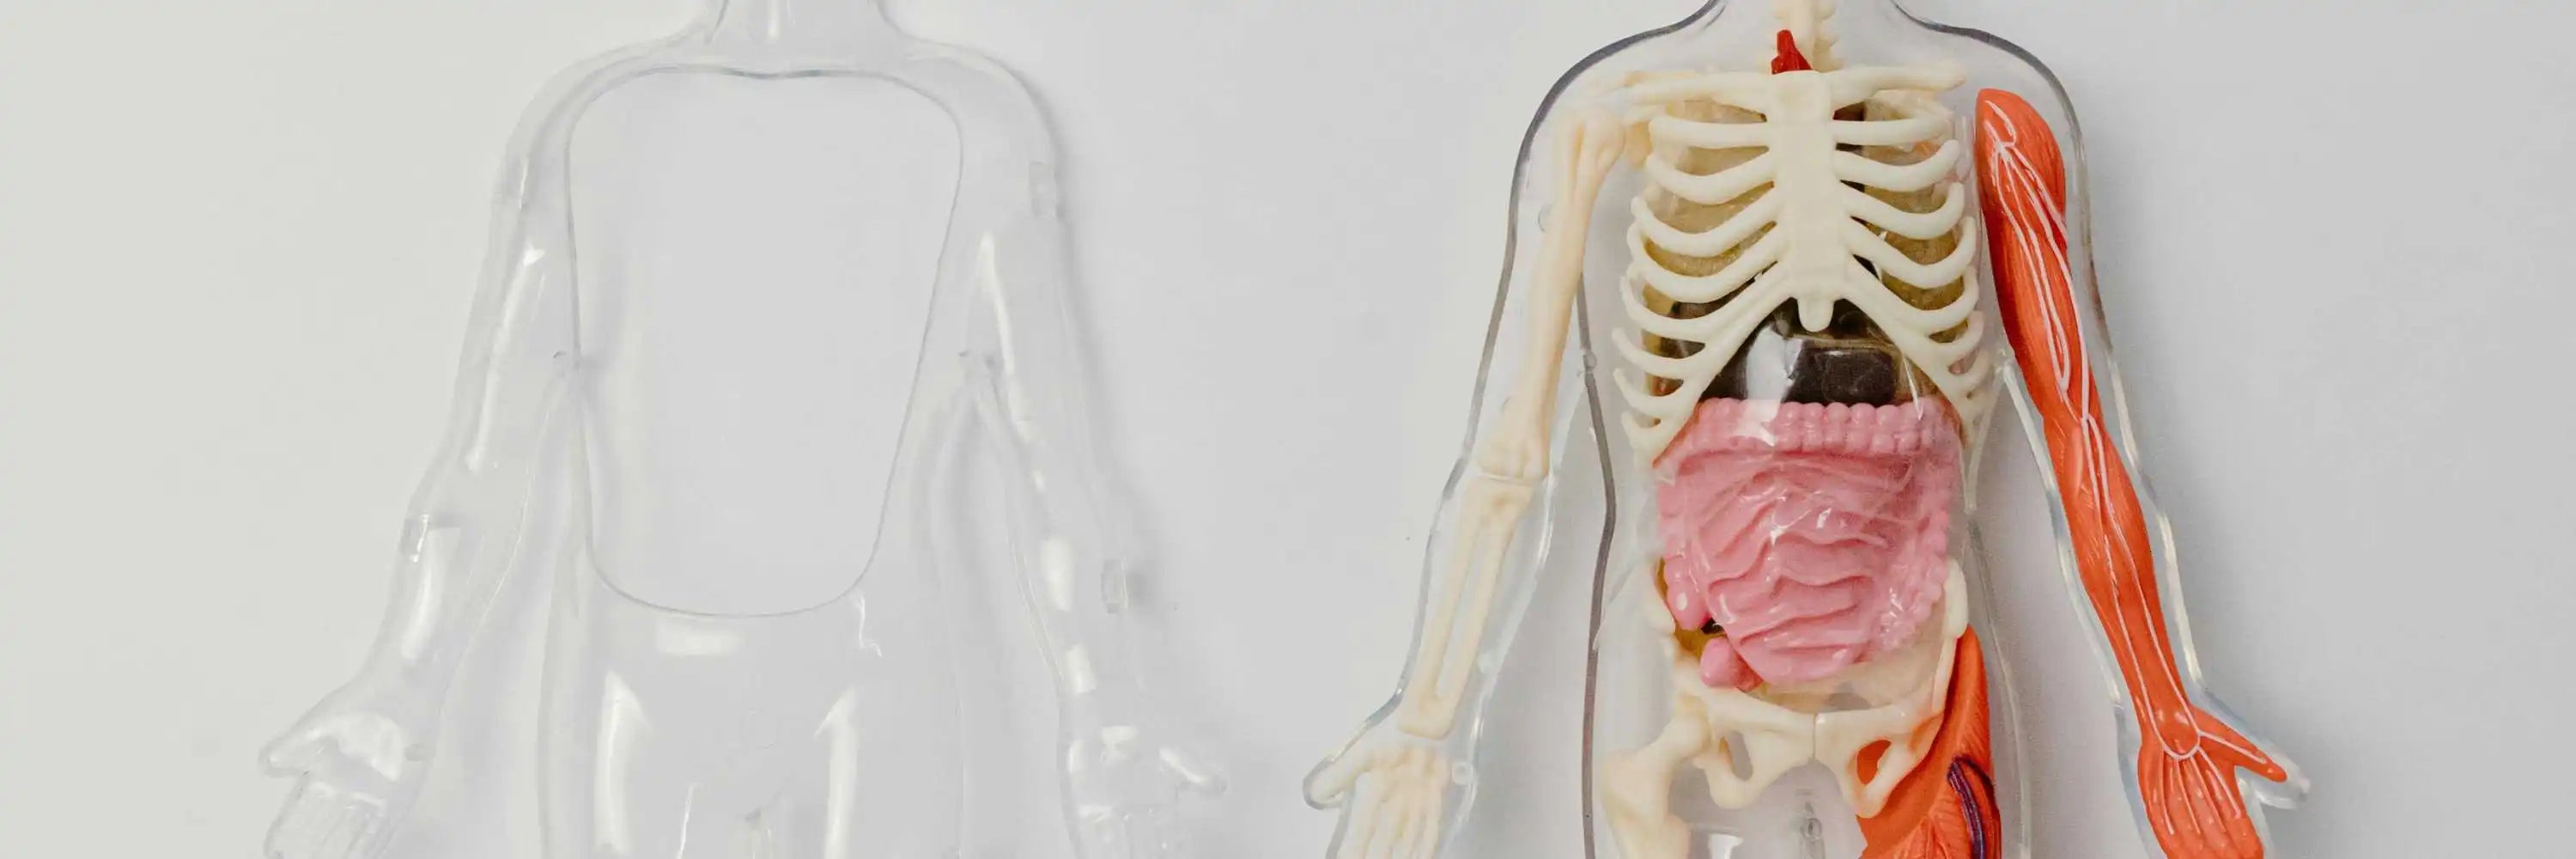 Anatomie du corps humain - Article Gapianne sur la vulve et le vagin